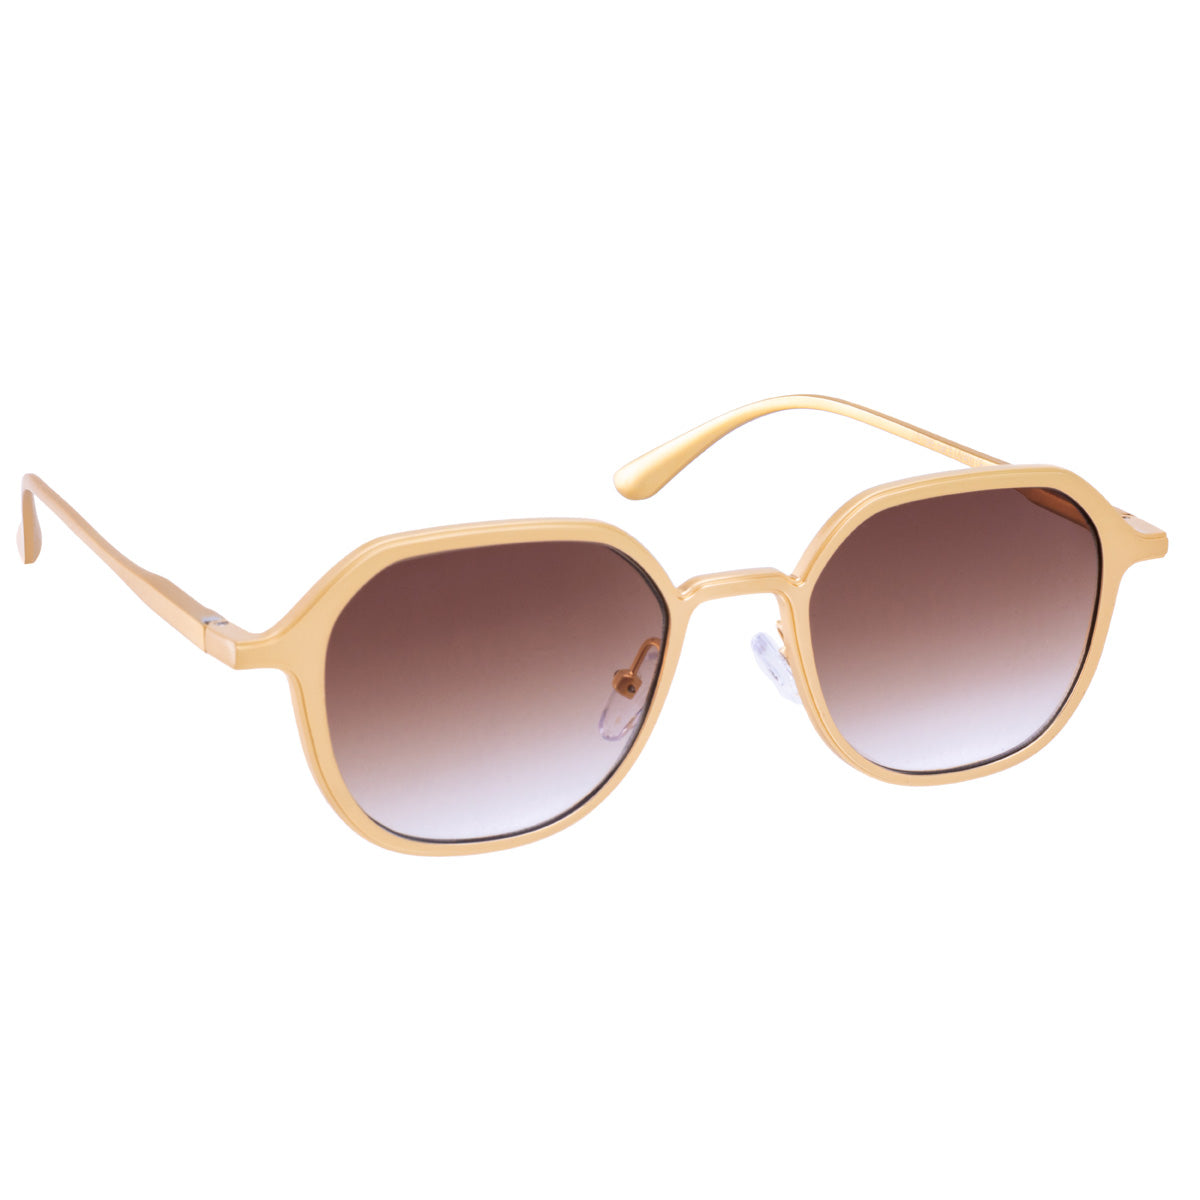 Angular sunglasses with metal frame